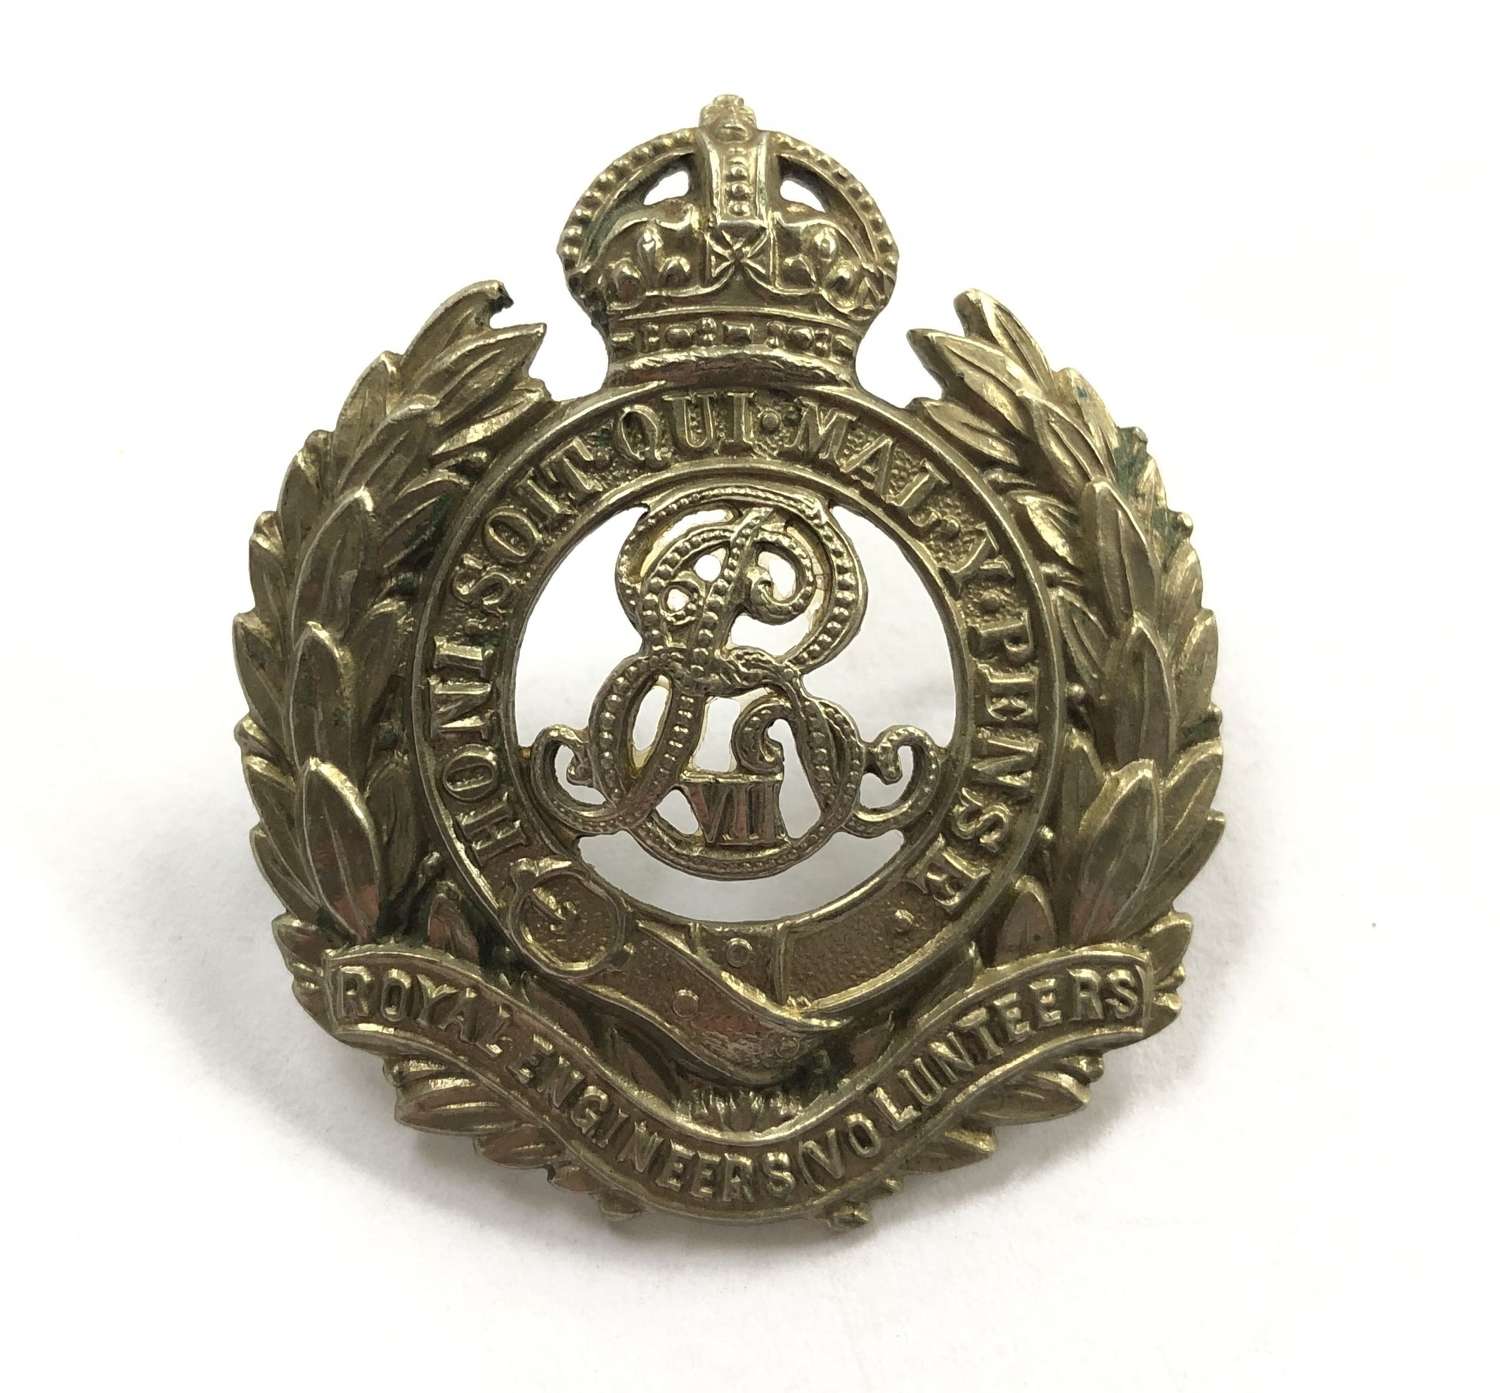 Royal Engineers Volunteers EDVII cap badge circa 1901-08